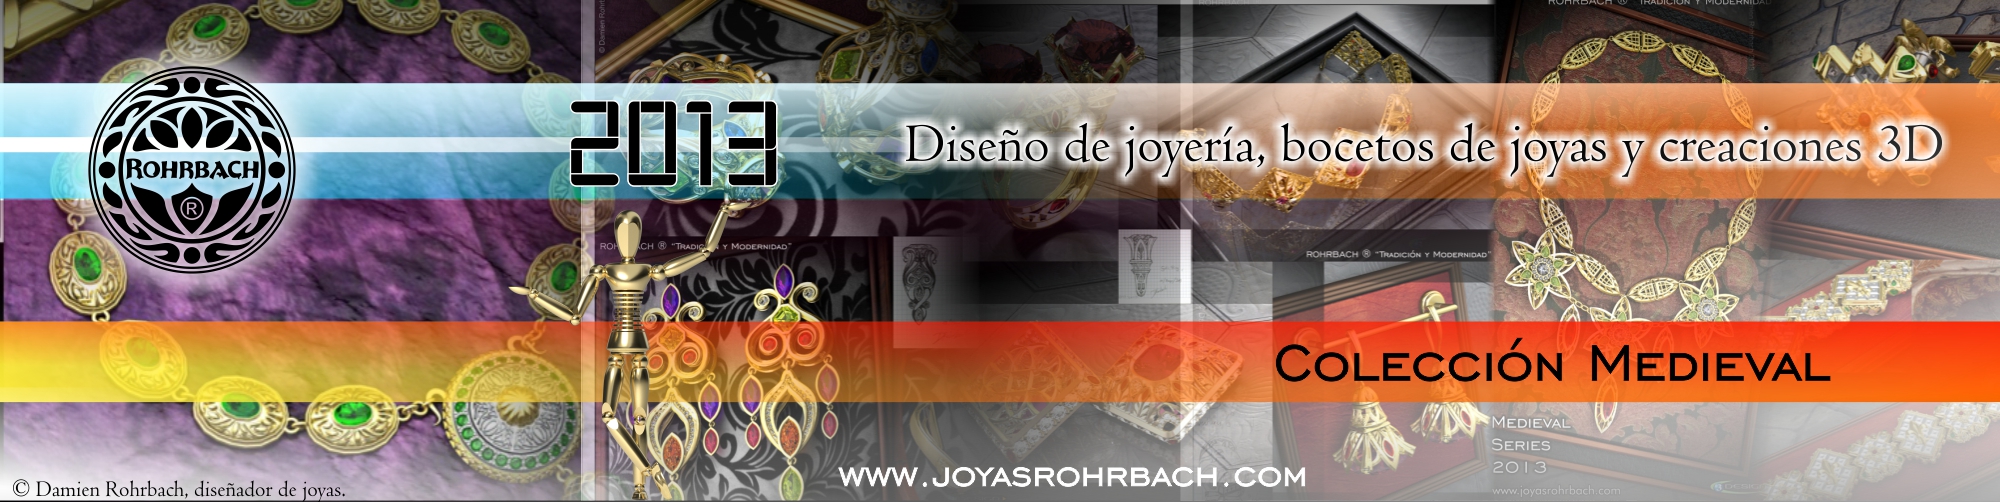 Colección Medieval 2013 ROHRBACH ® Maestro joyero diseñador de joyas